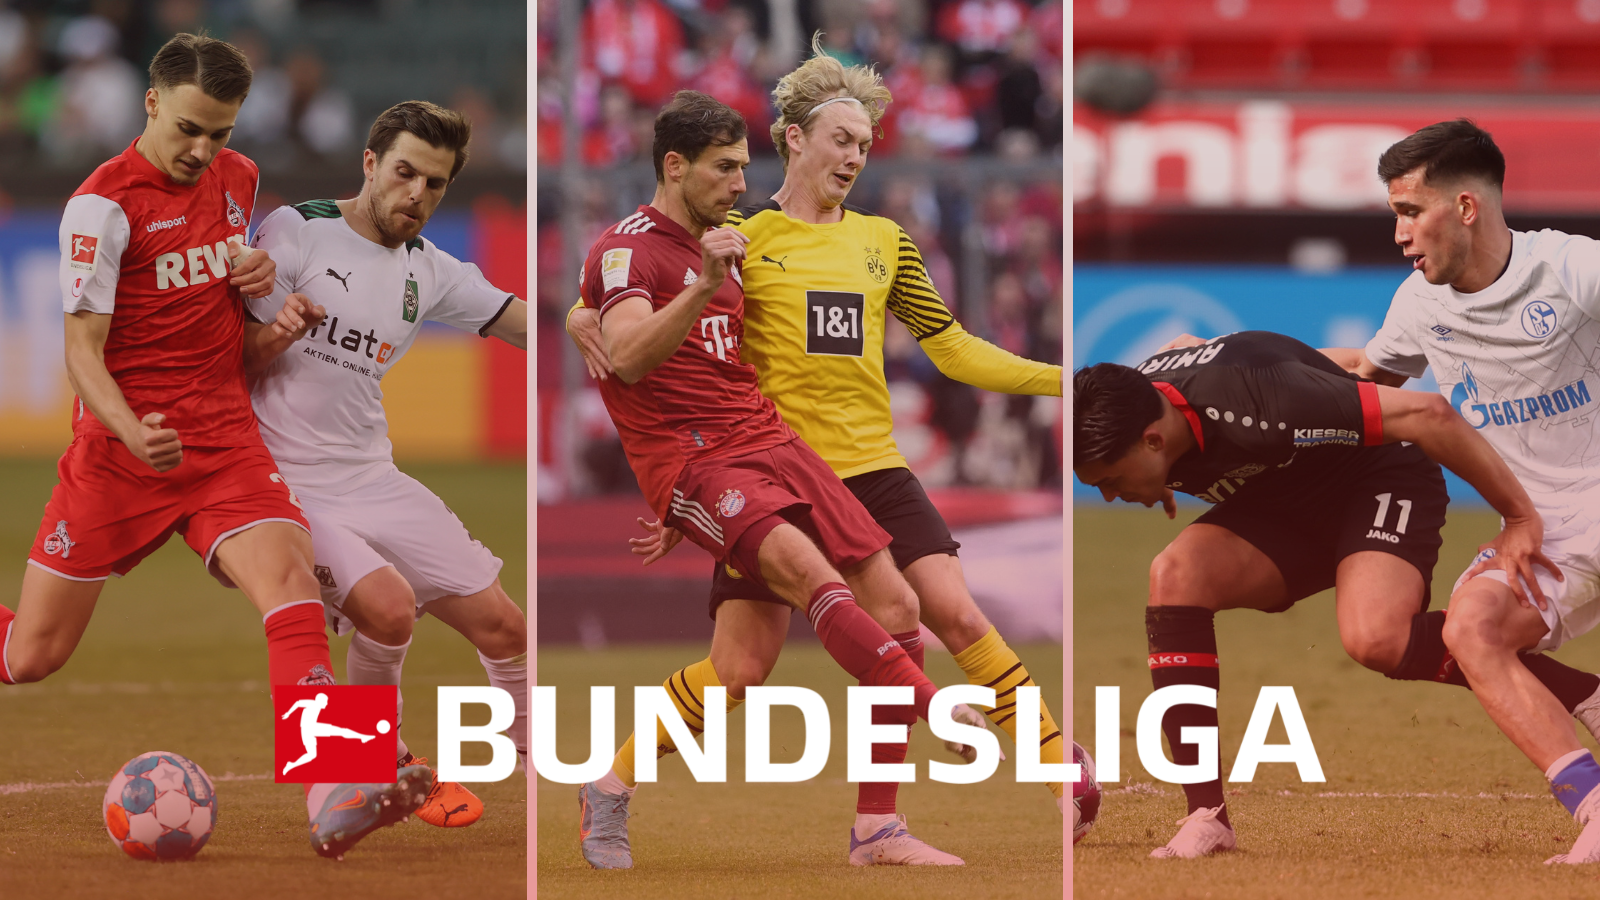 Estos son los tres partidos destacados a ver en la novena jornada de Bundesliga. Foto: Getty Images.